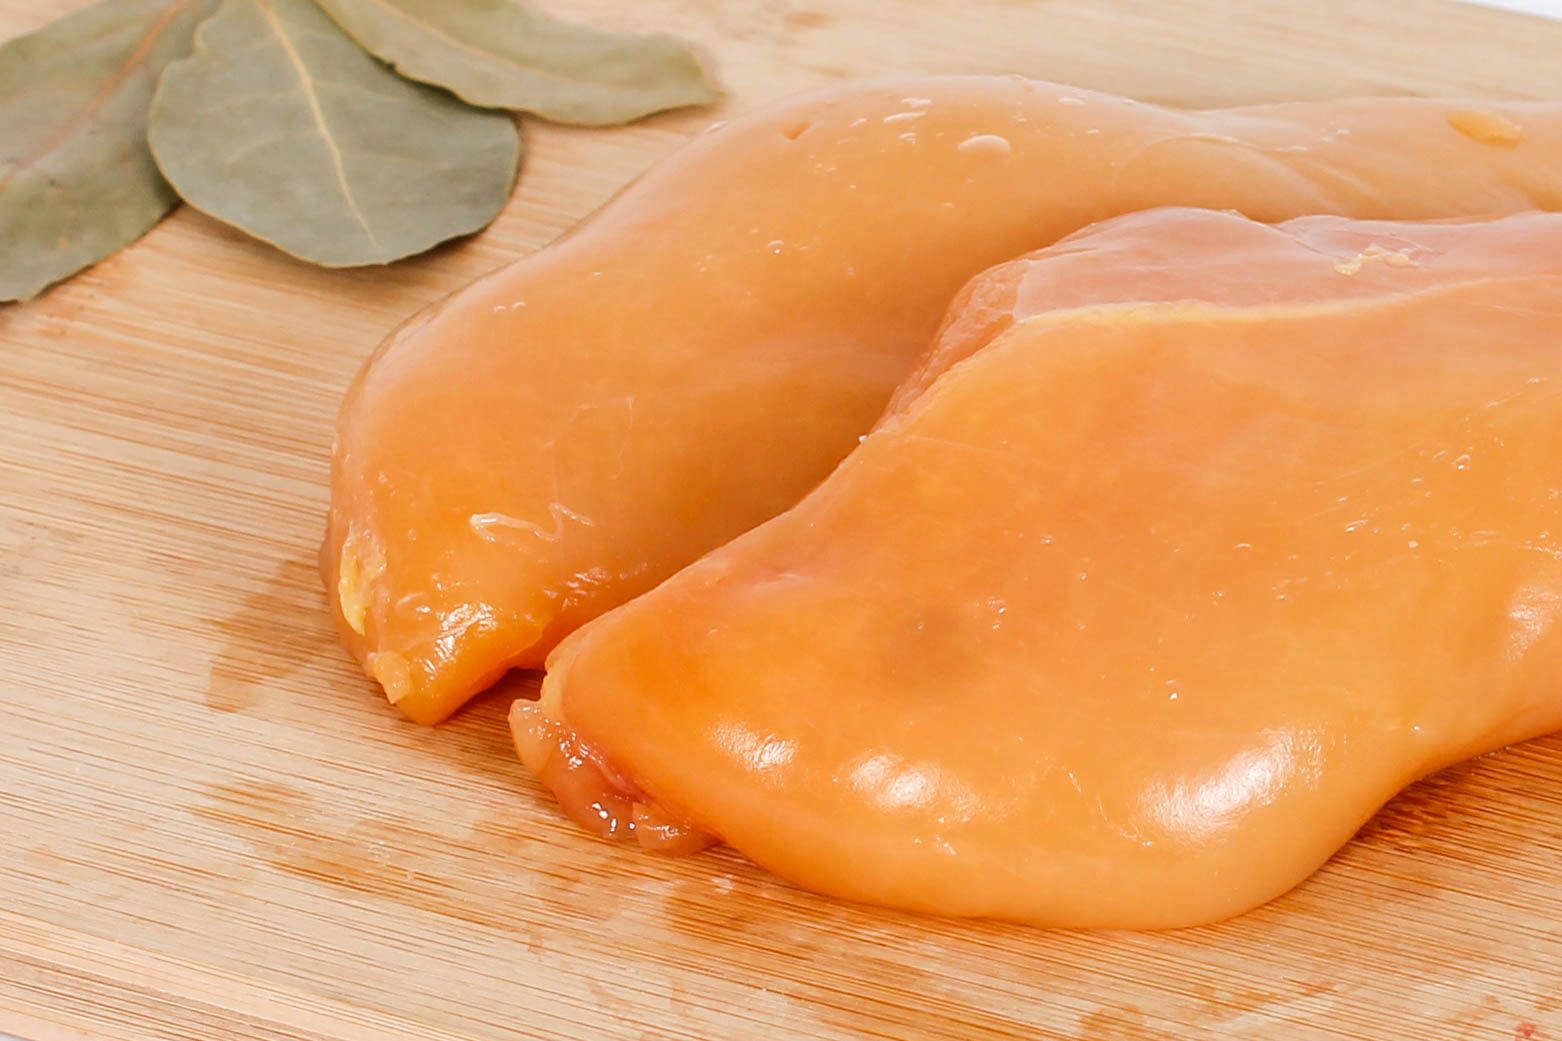 Pit de pollastre cru, un dels aliments que poden causar salmonel·losi